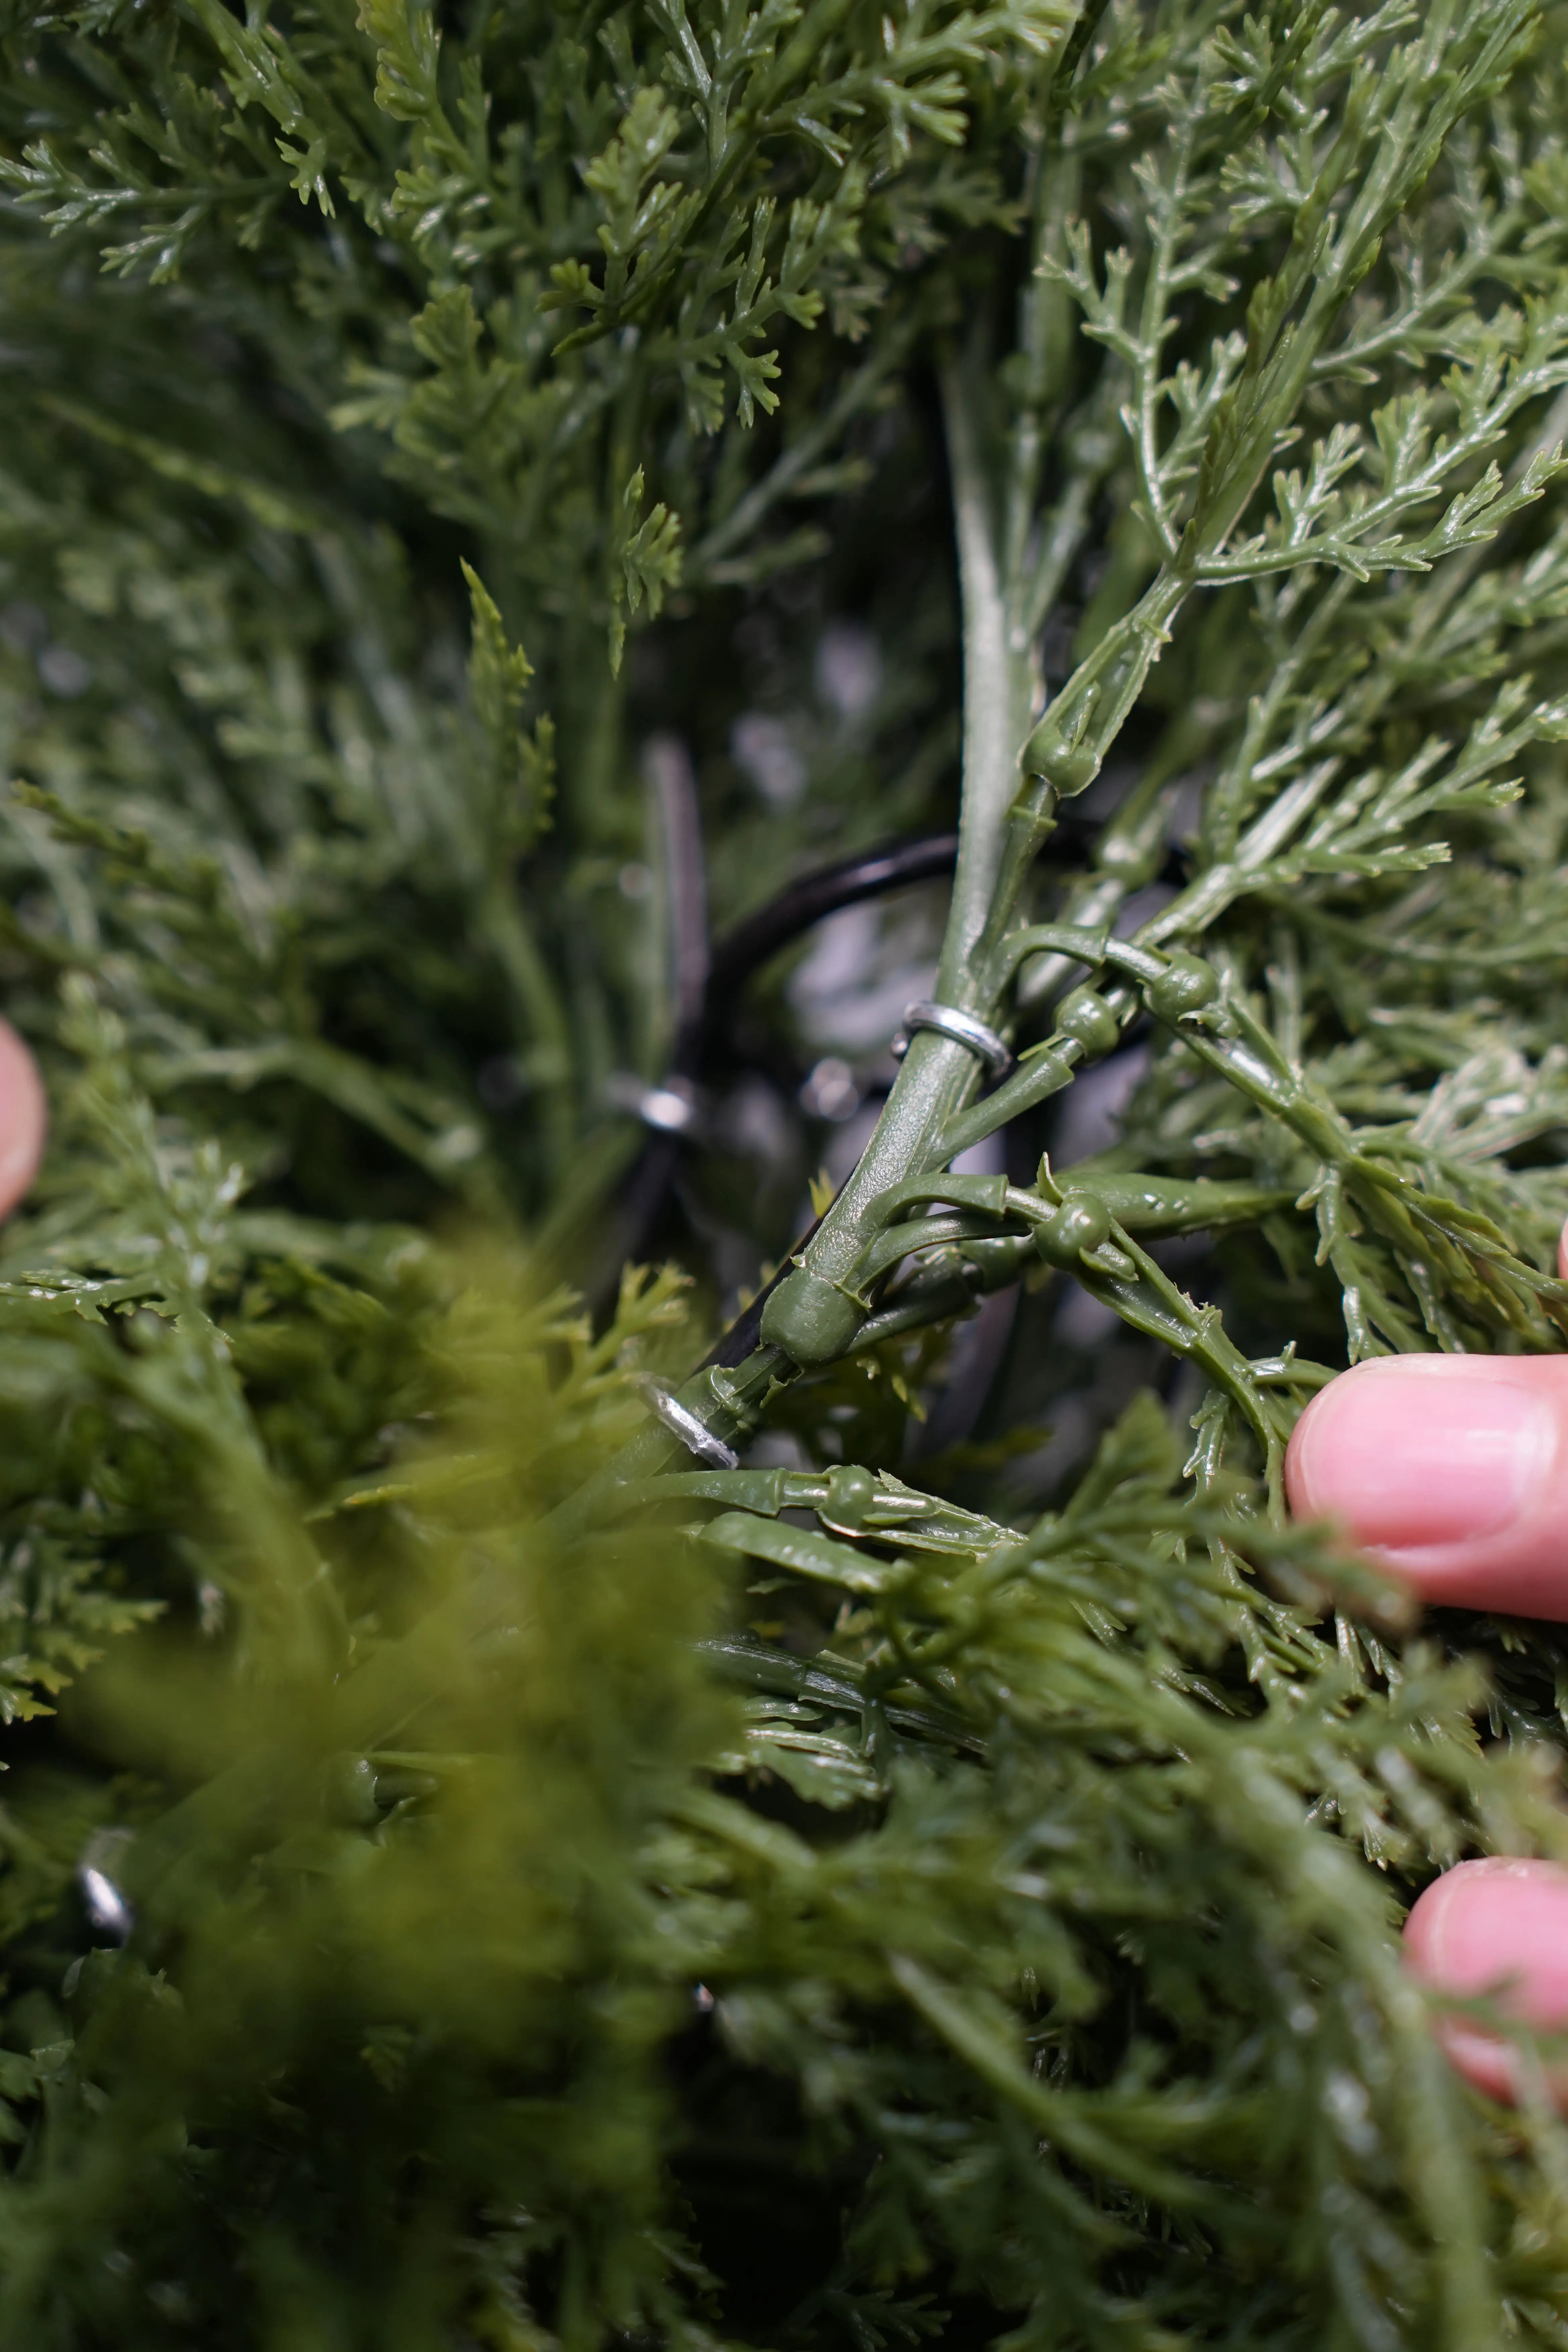 غطاء رأس اصطناعي شجر حلزوني نبات اصطناعي UV ديكور منزلي للداخل والخارج